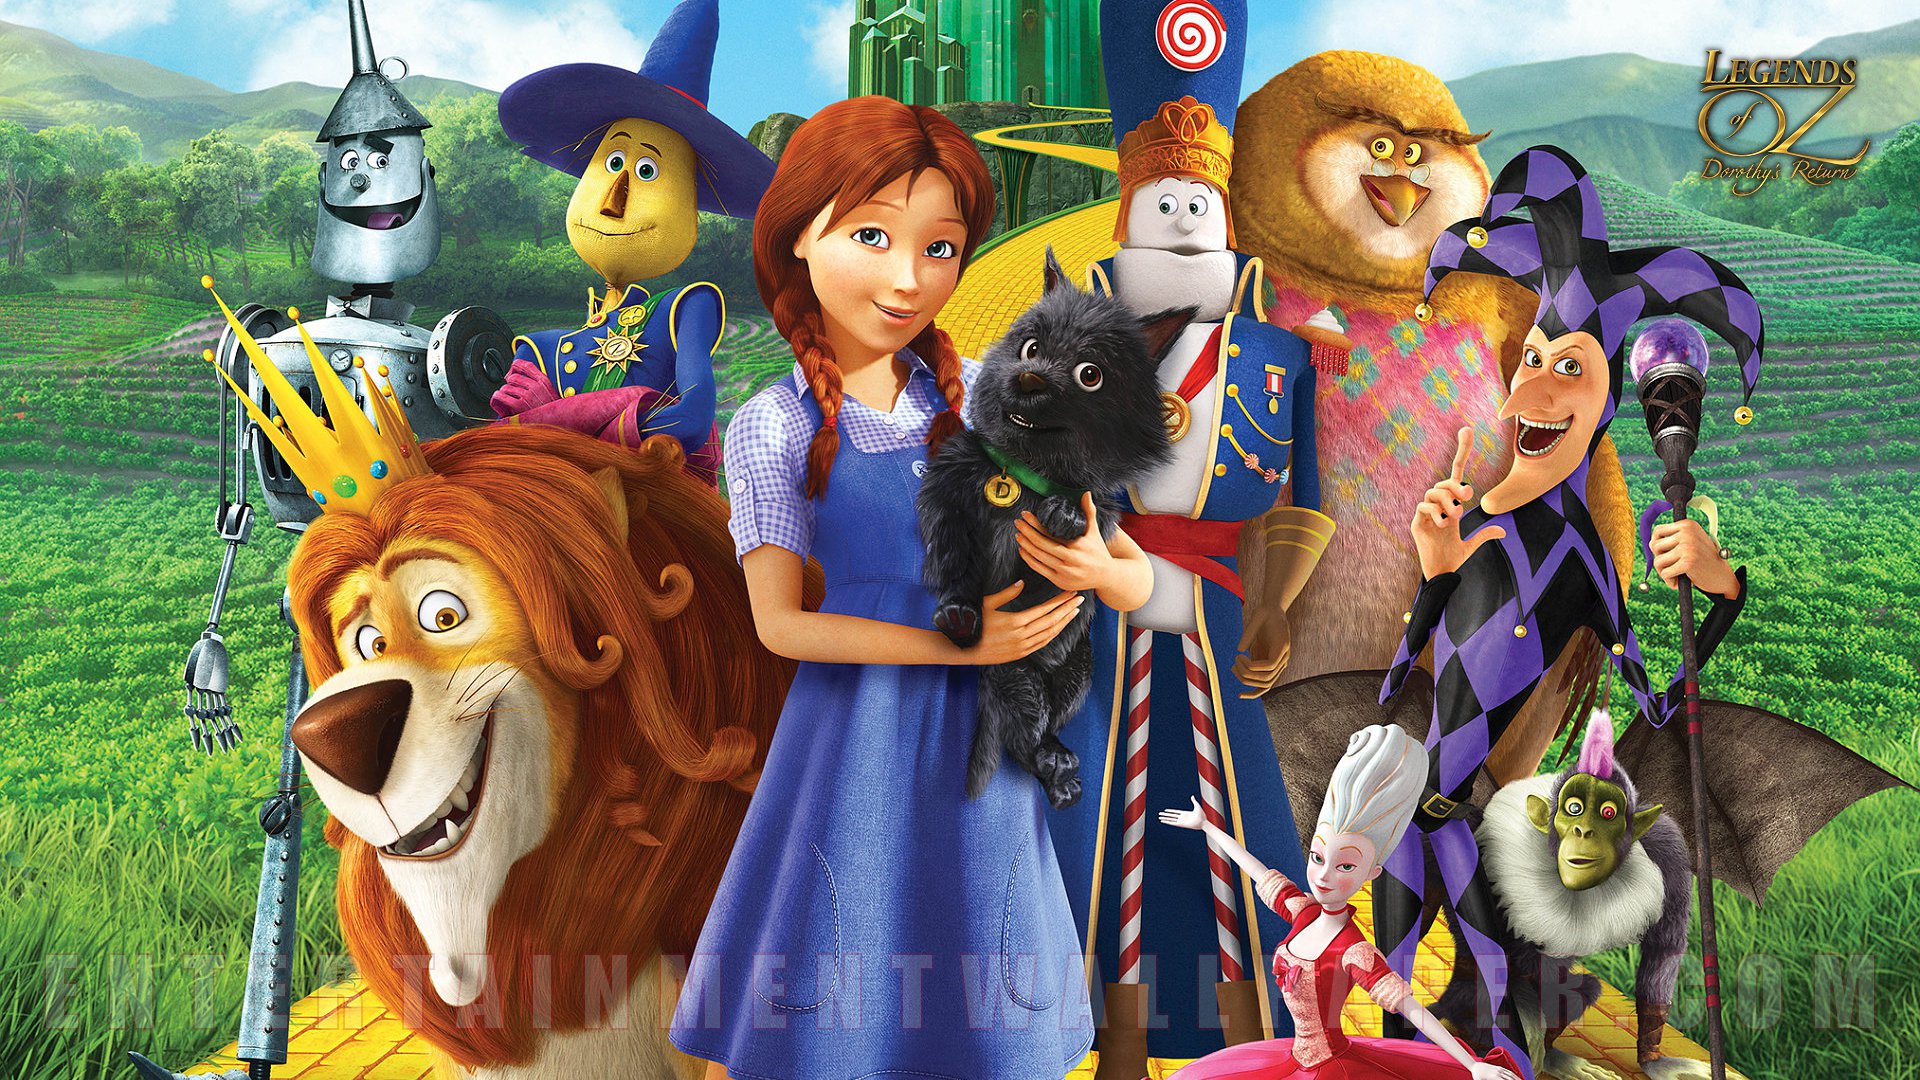 Legends Of Oz - Legends Of Oz Dorothy's Return Poster , HD Wallpaper & Backgrounds